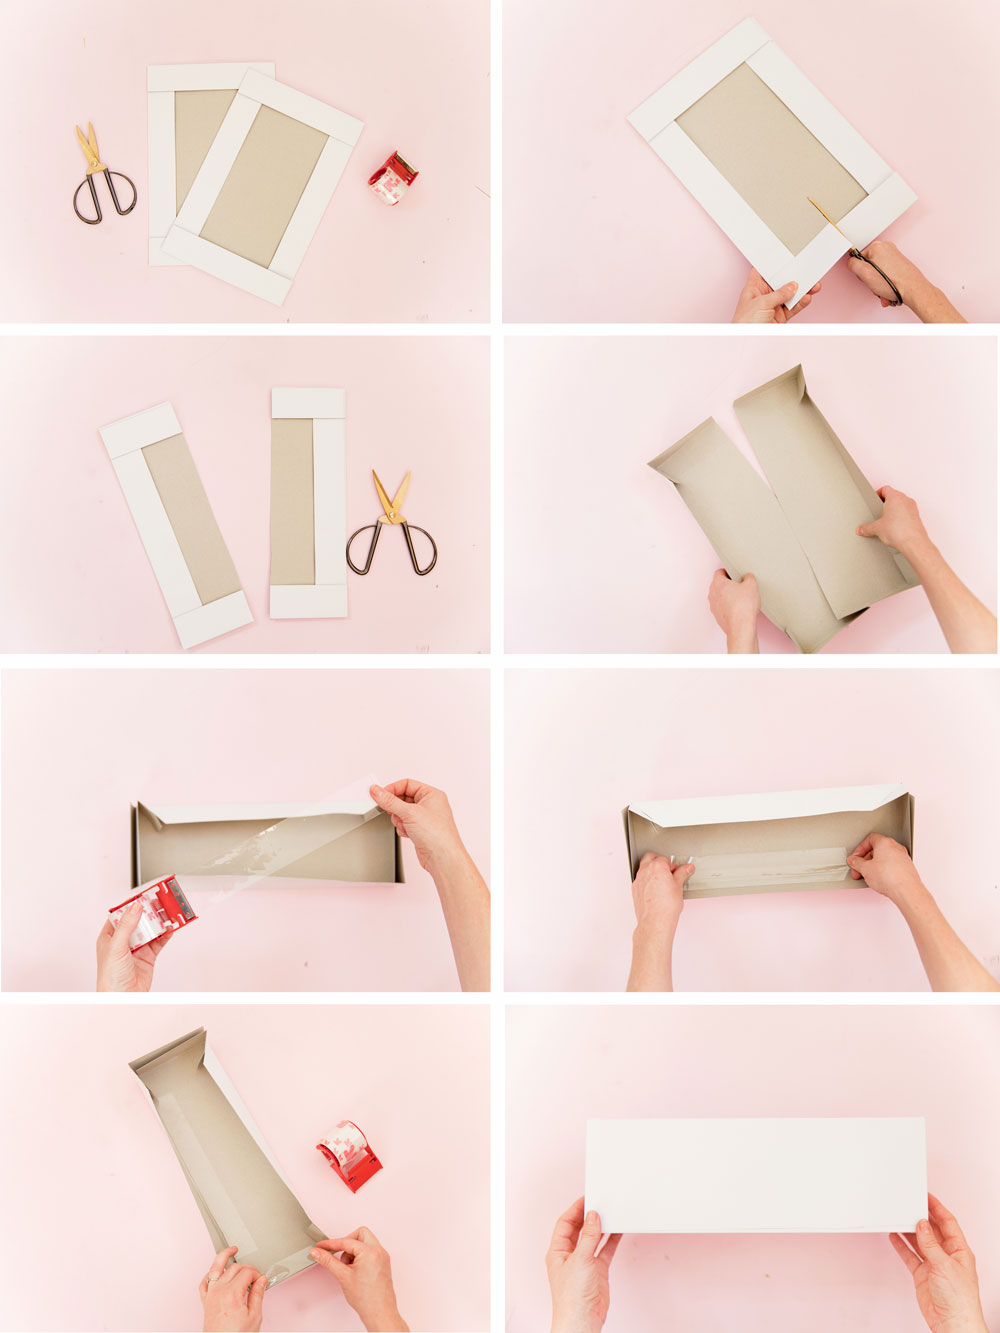 Завернуть прямоугольный подарок. Как правильно упаковать подарок в подарочную бумагу. Как завернуть подарок в оберточную бумагу. Как правильно упаковать коробку в подарочную бумагу. Как правильно упаковывать подарки в упаковочную бумагу.